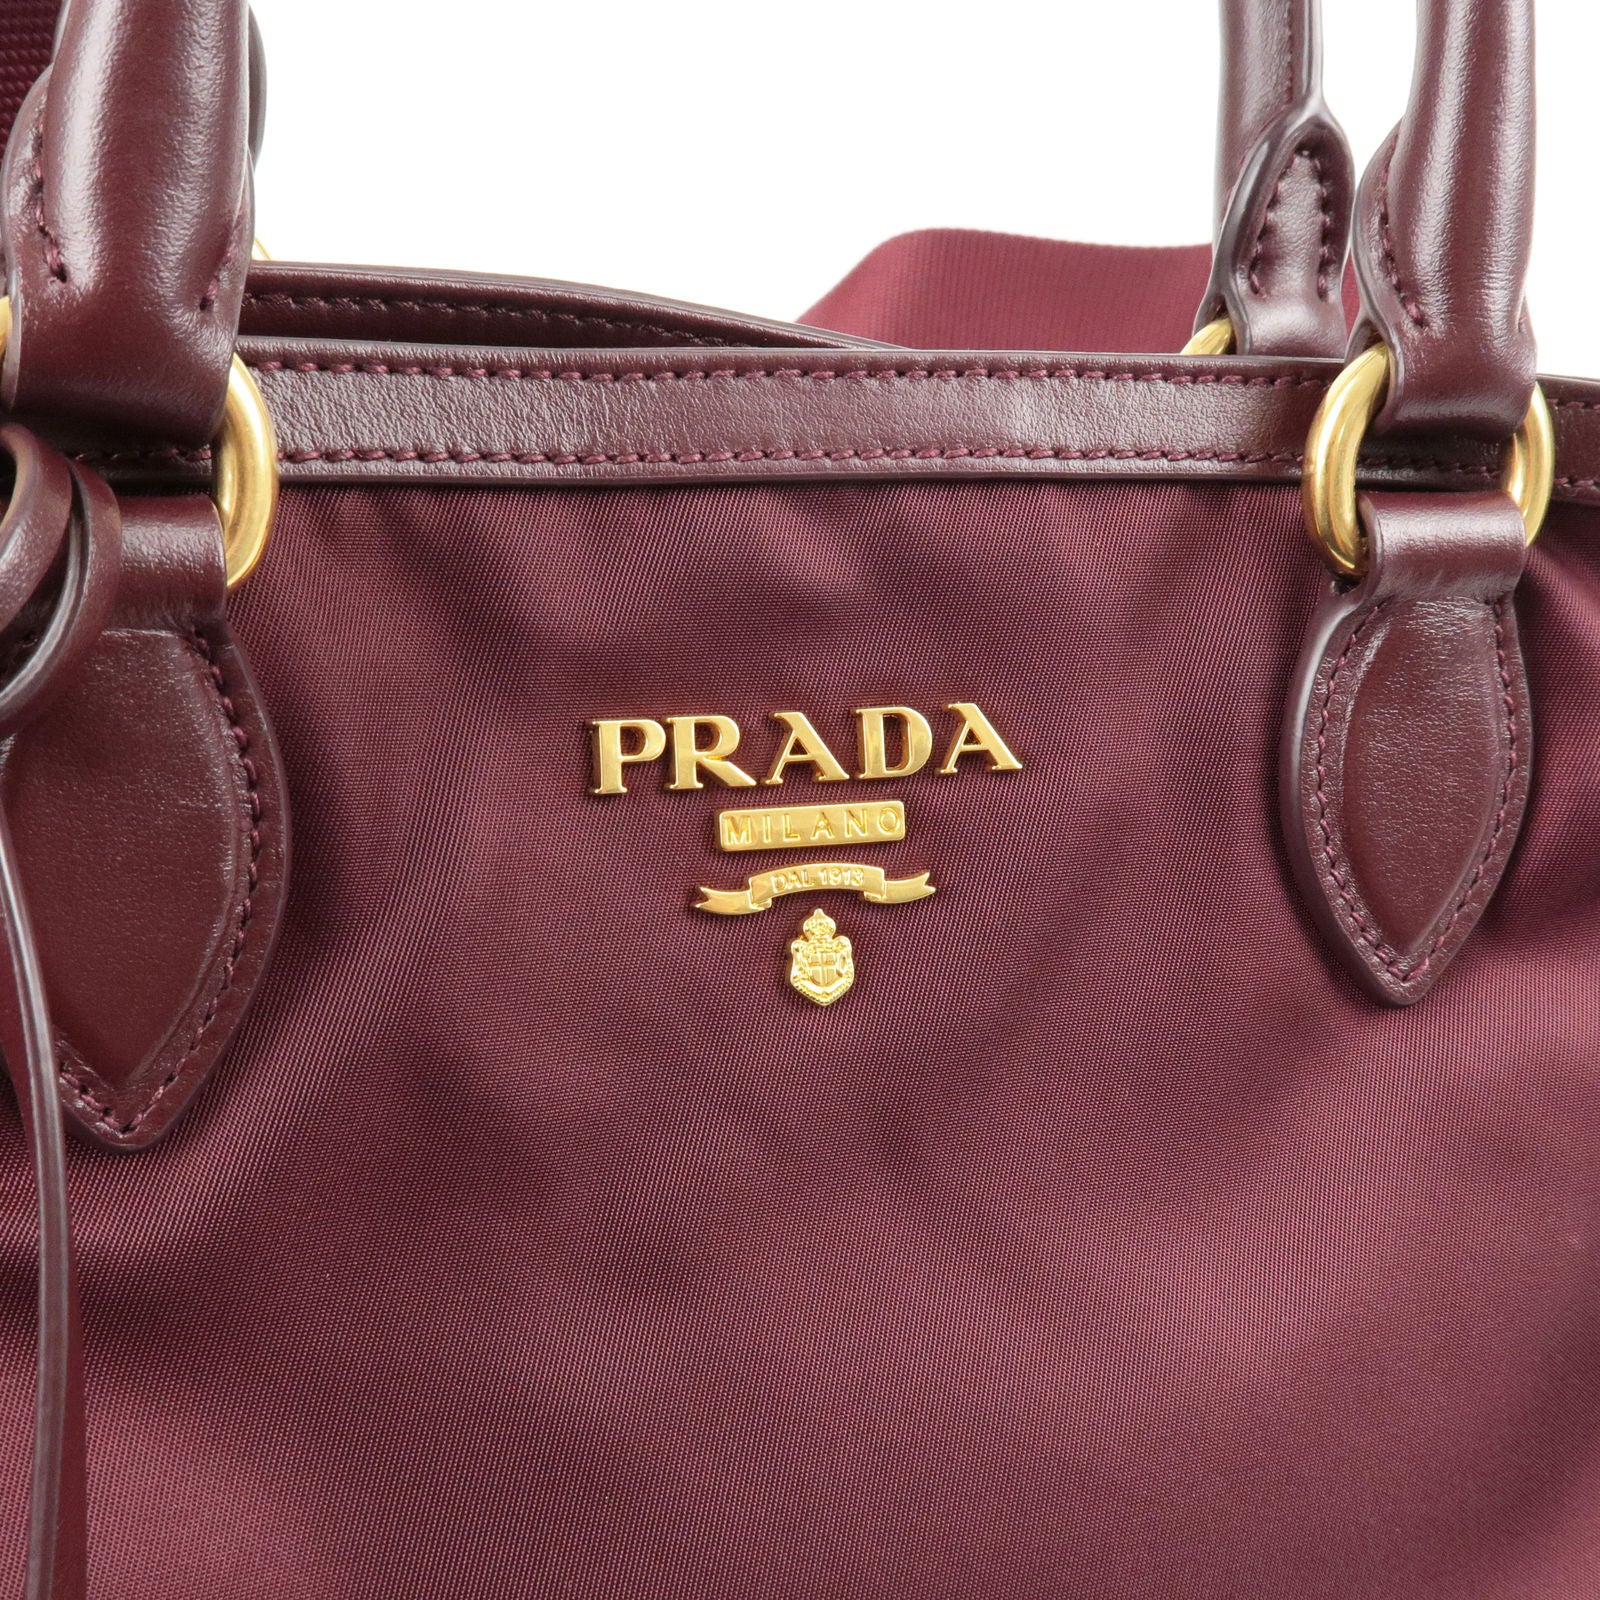 Prada Symbol Embroidery Fabric Handbag Shoulder 2Way 1Ba354 Navy F122